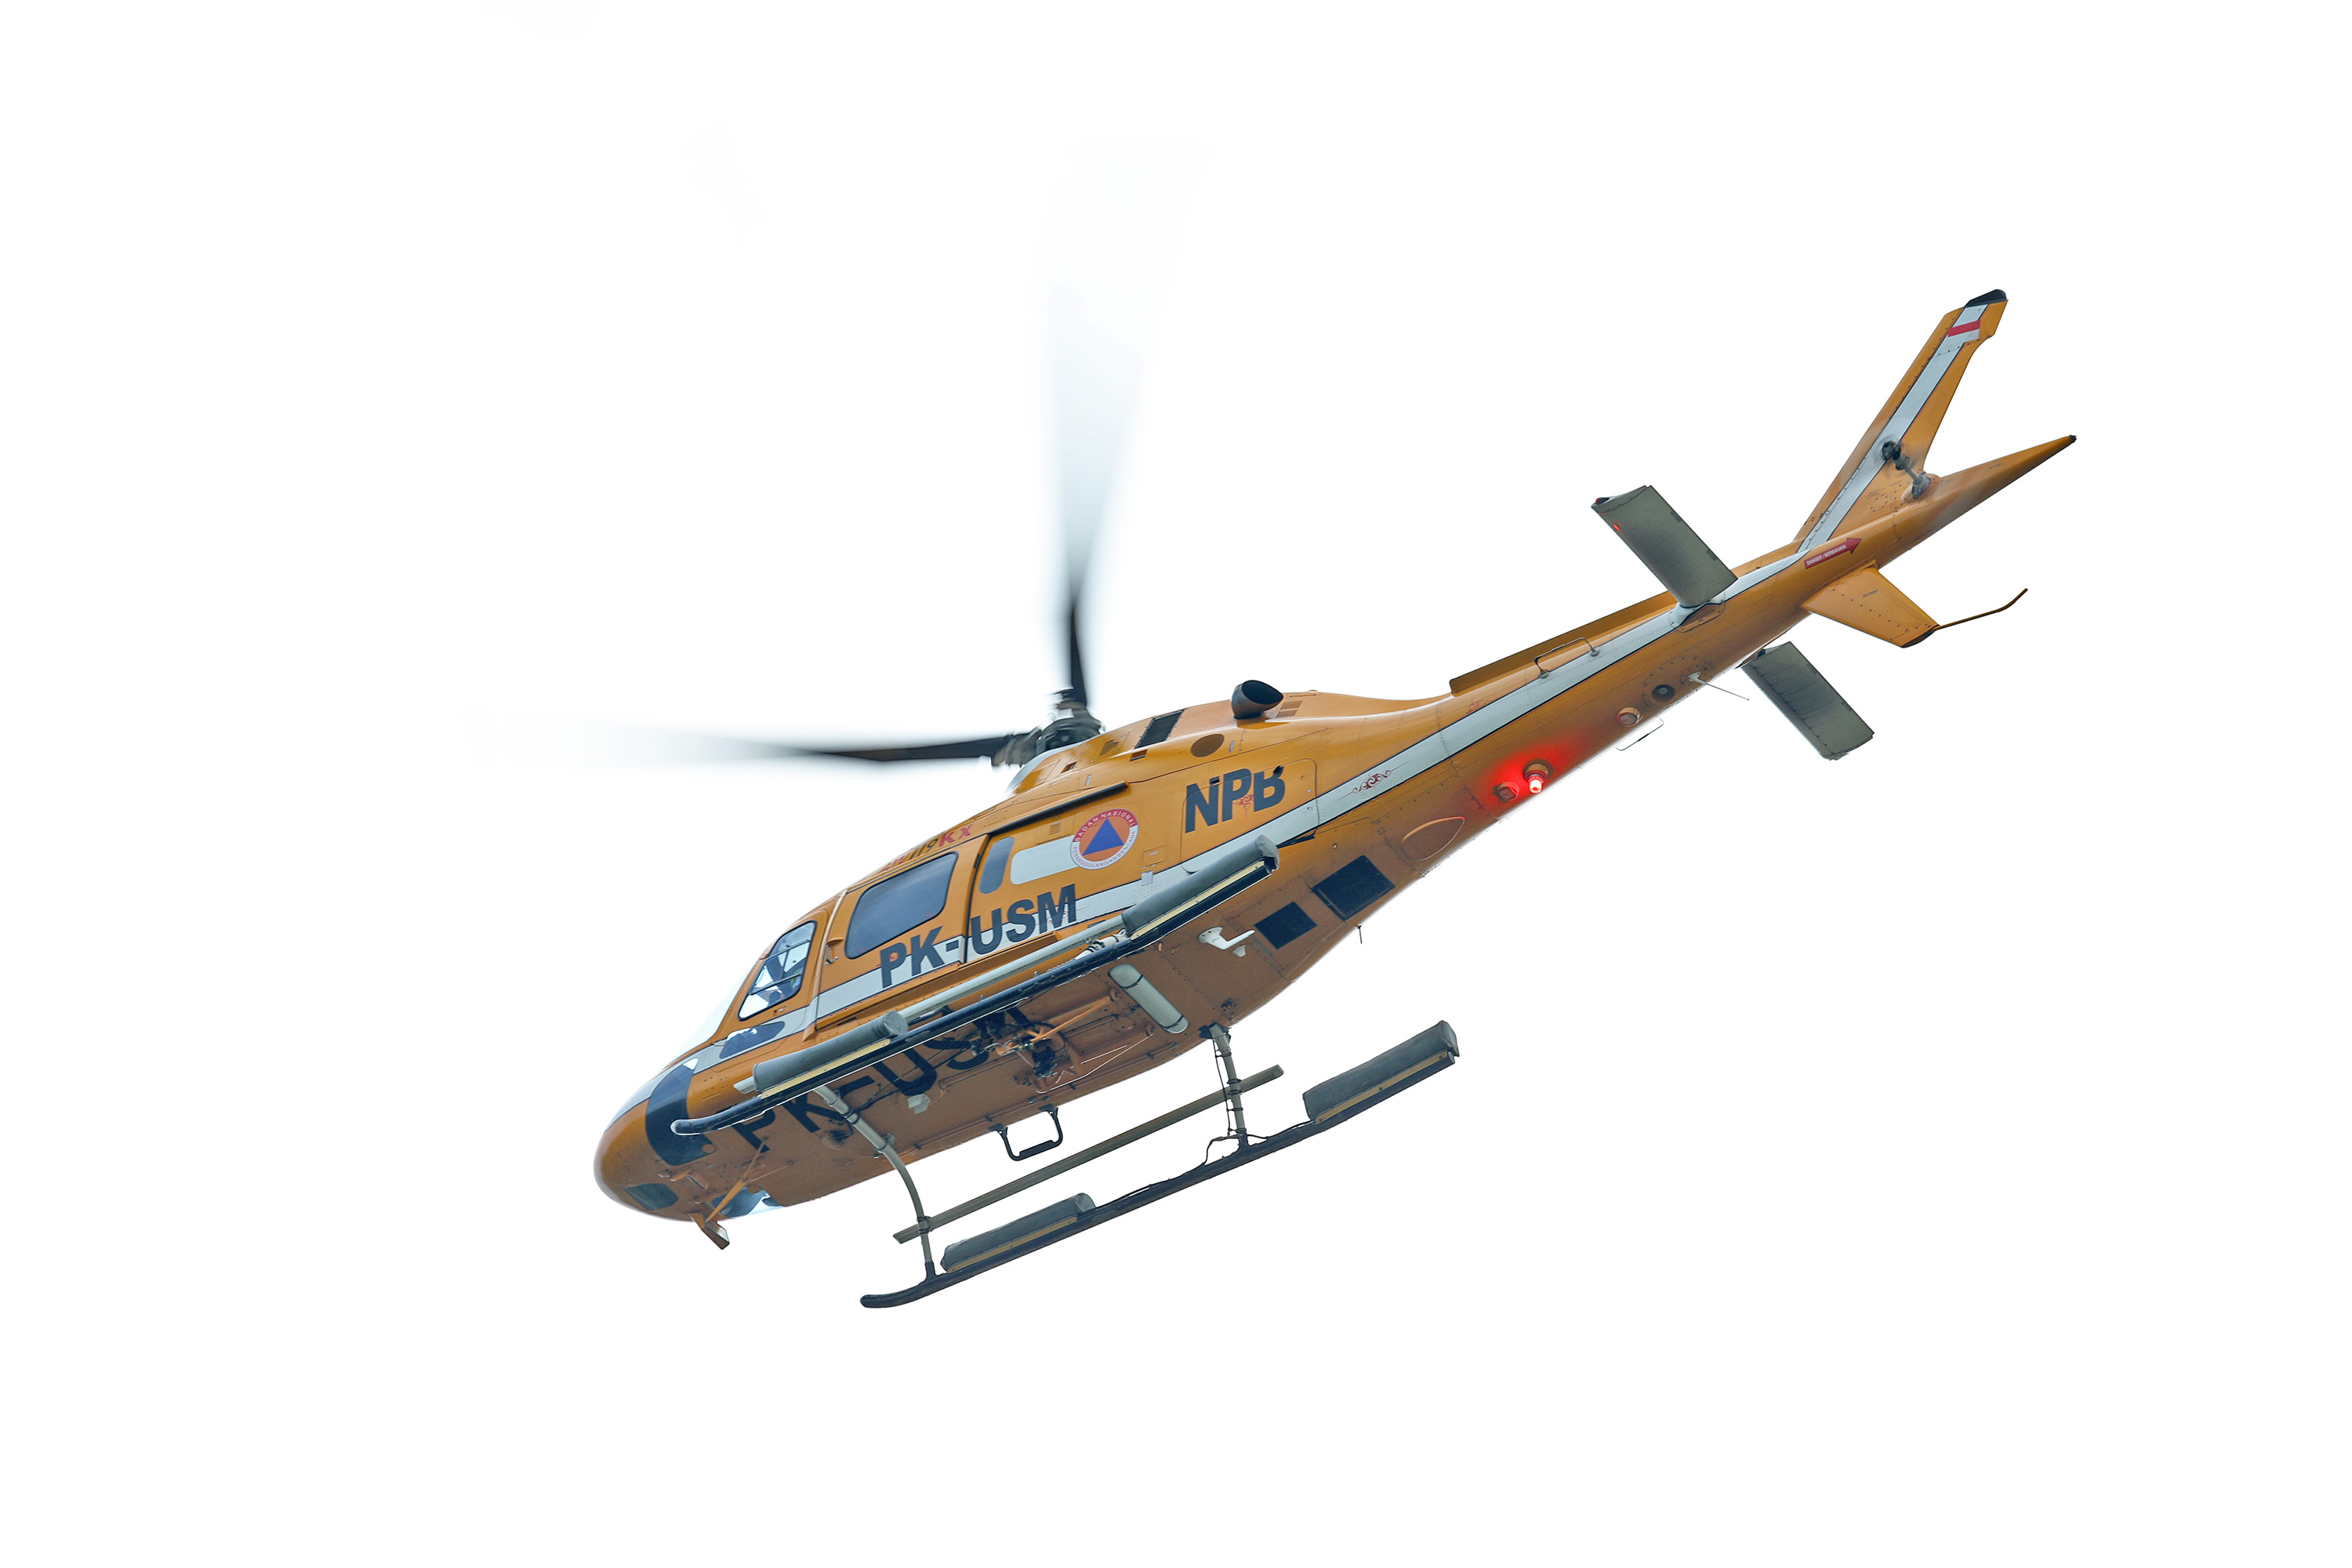 Helikopter BNPB bernomor PK - USM terbang dari Lanud Sadjad Ranai, Natun, menuju Pulau Serasan.